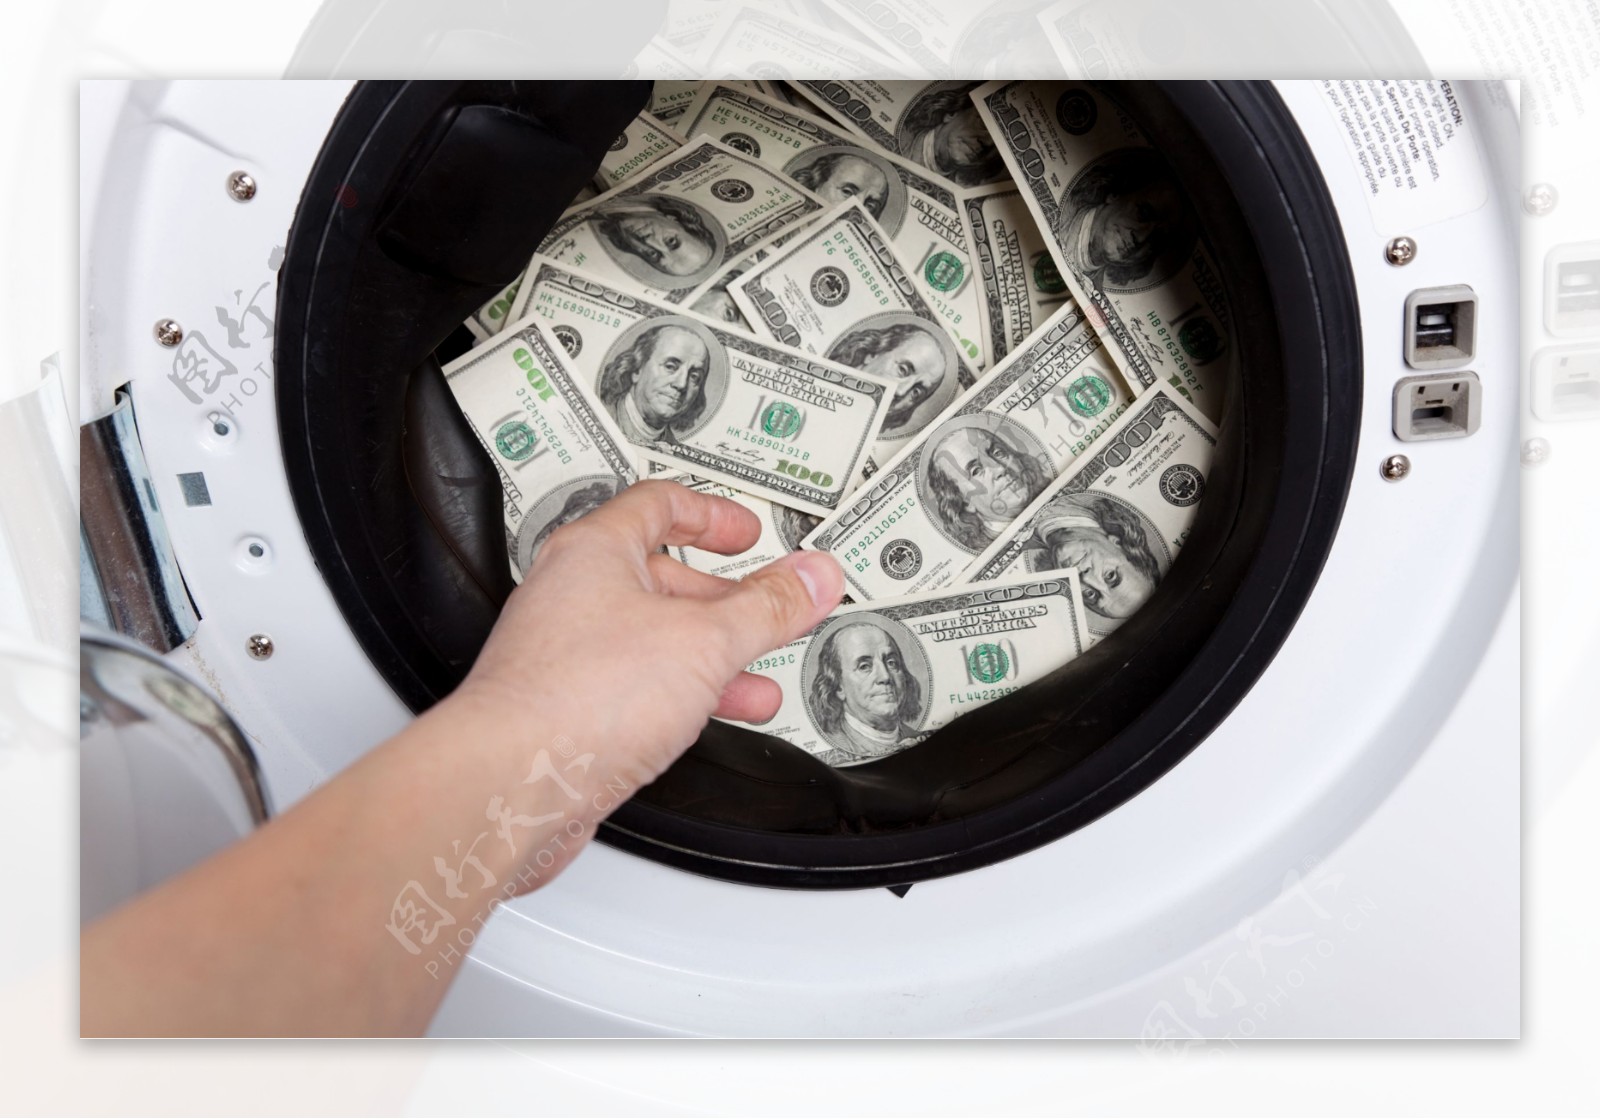 放进洗衣机的纸币图片